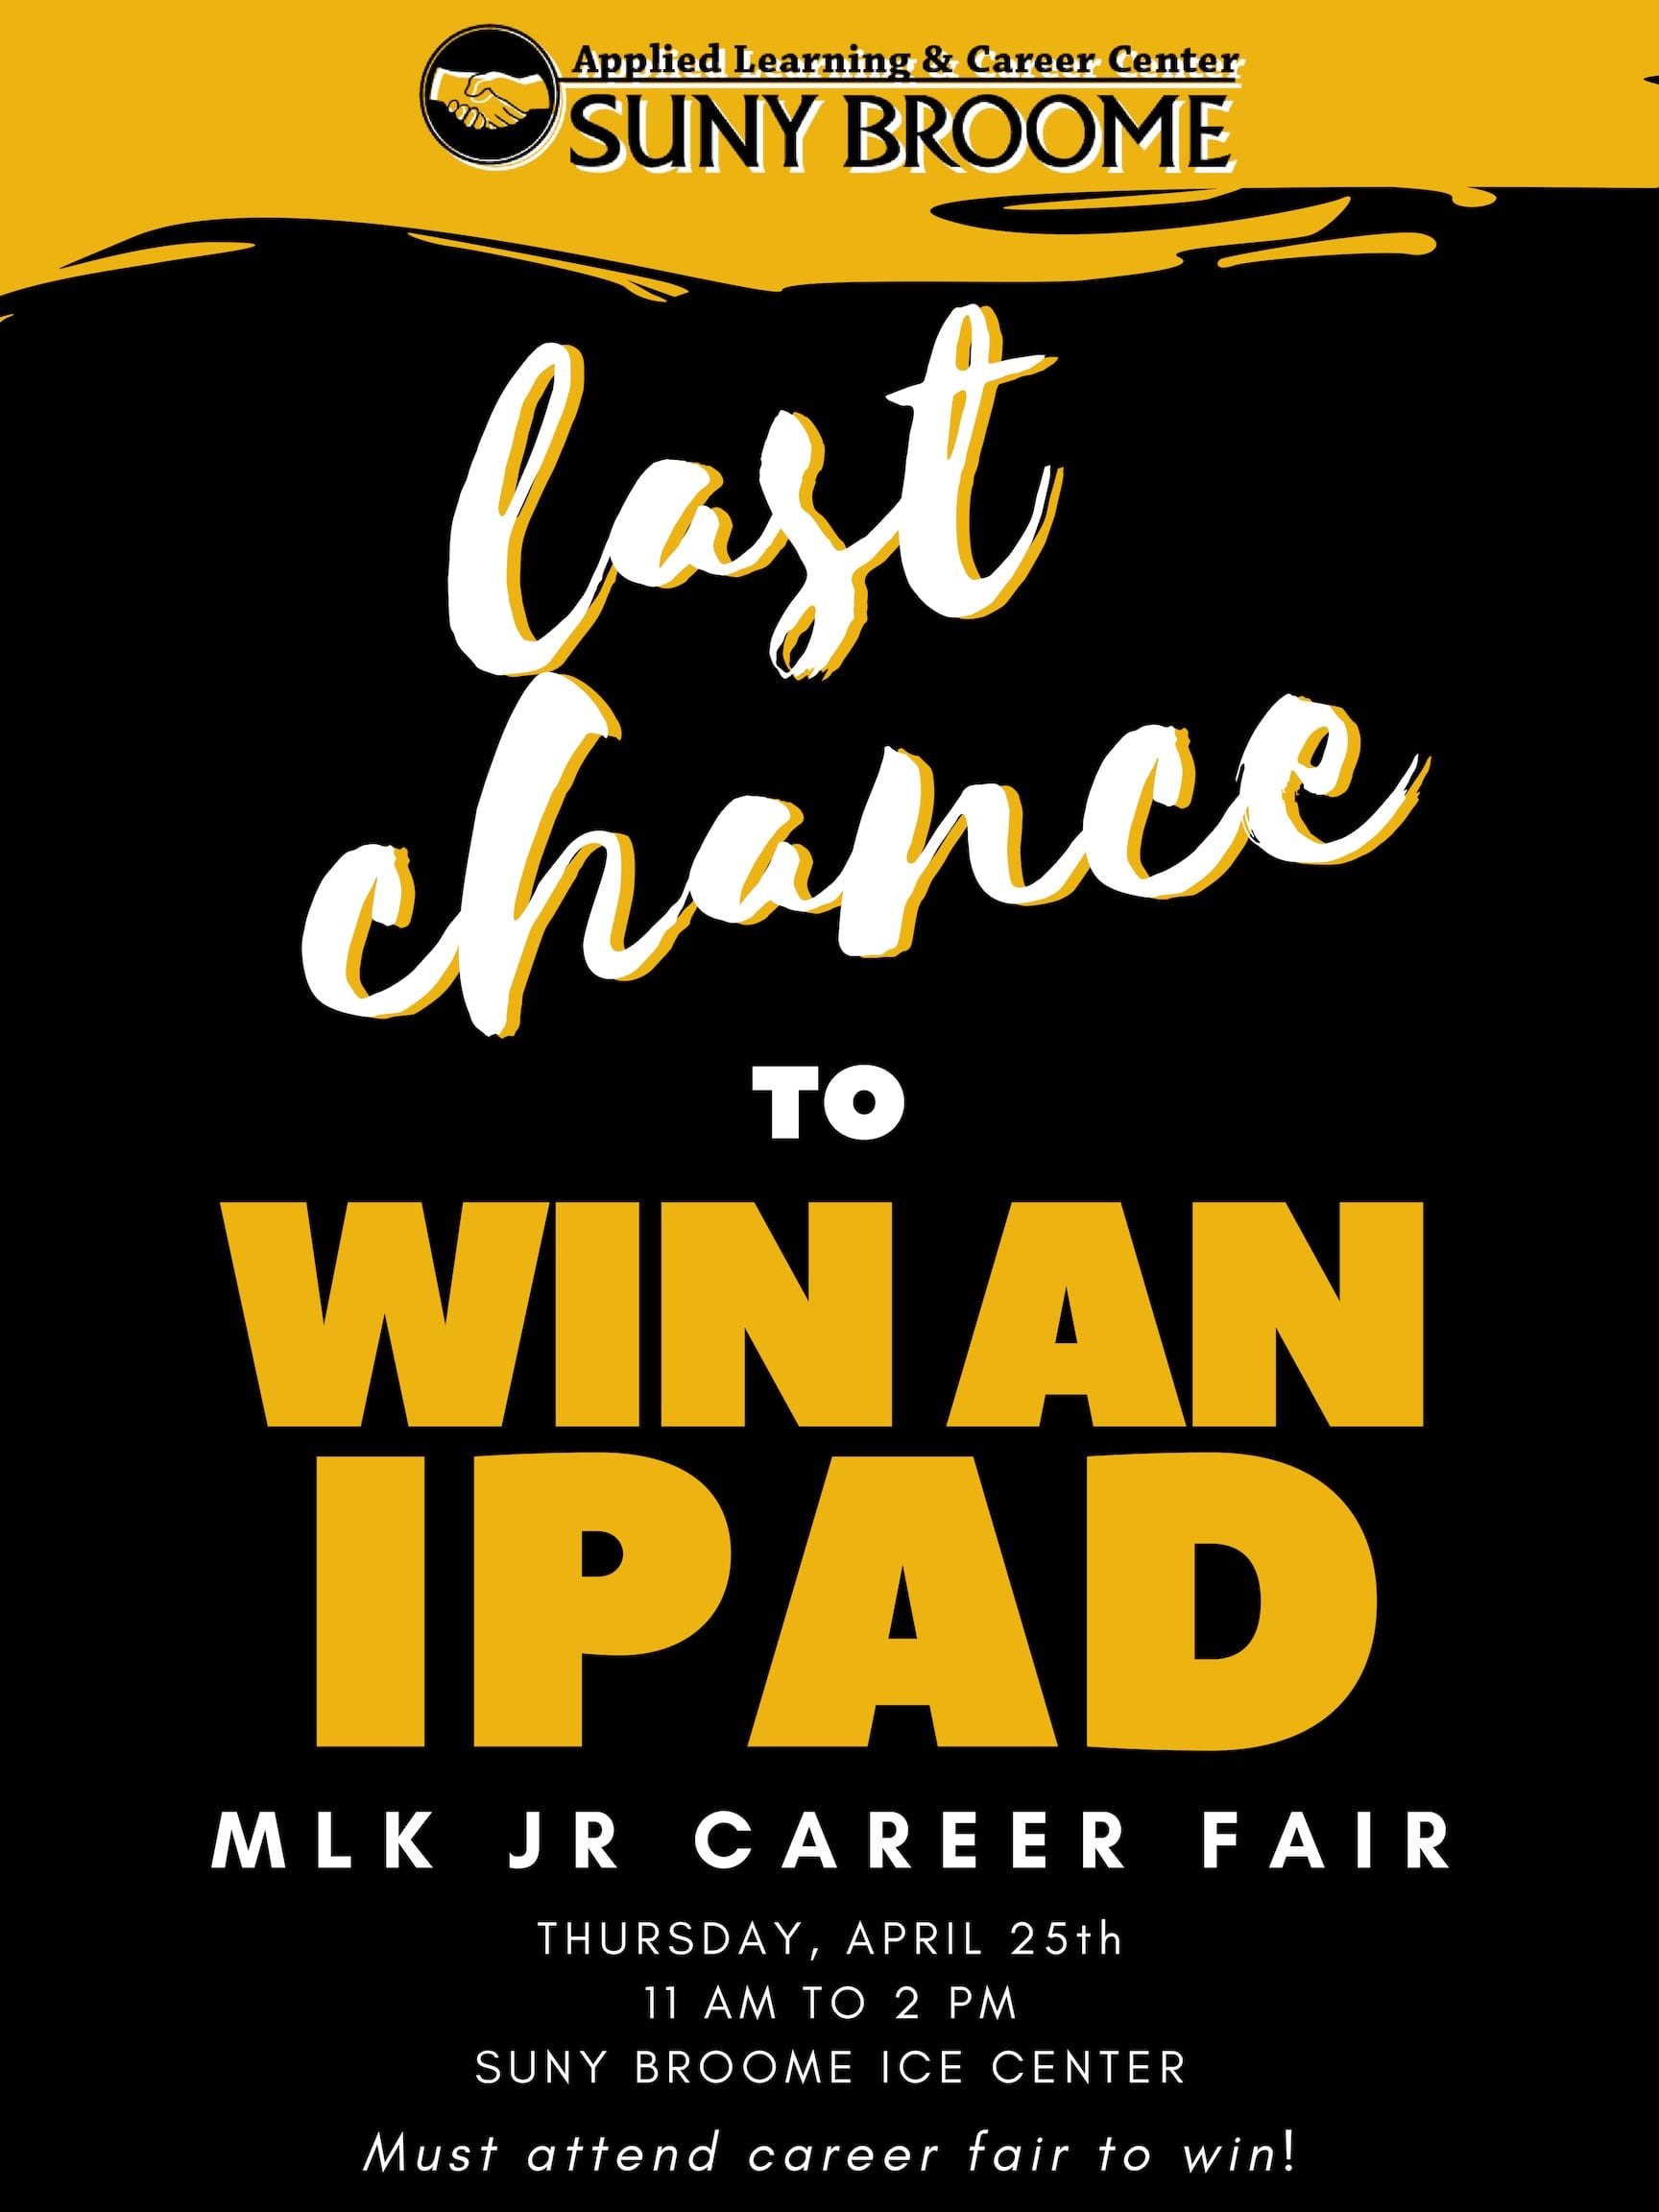 Last chance to win an iPad!